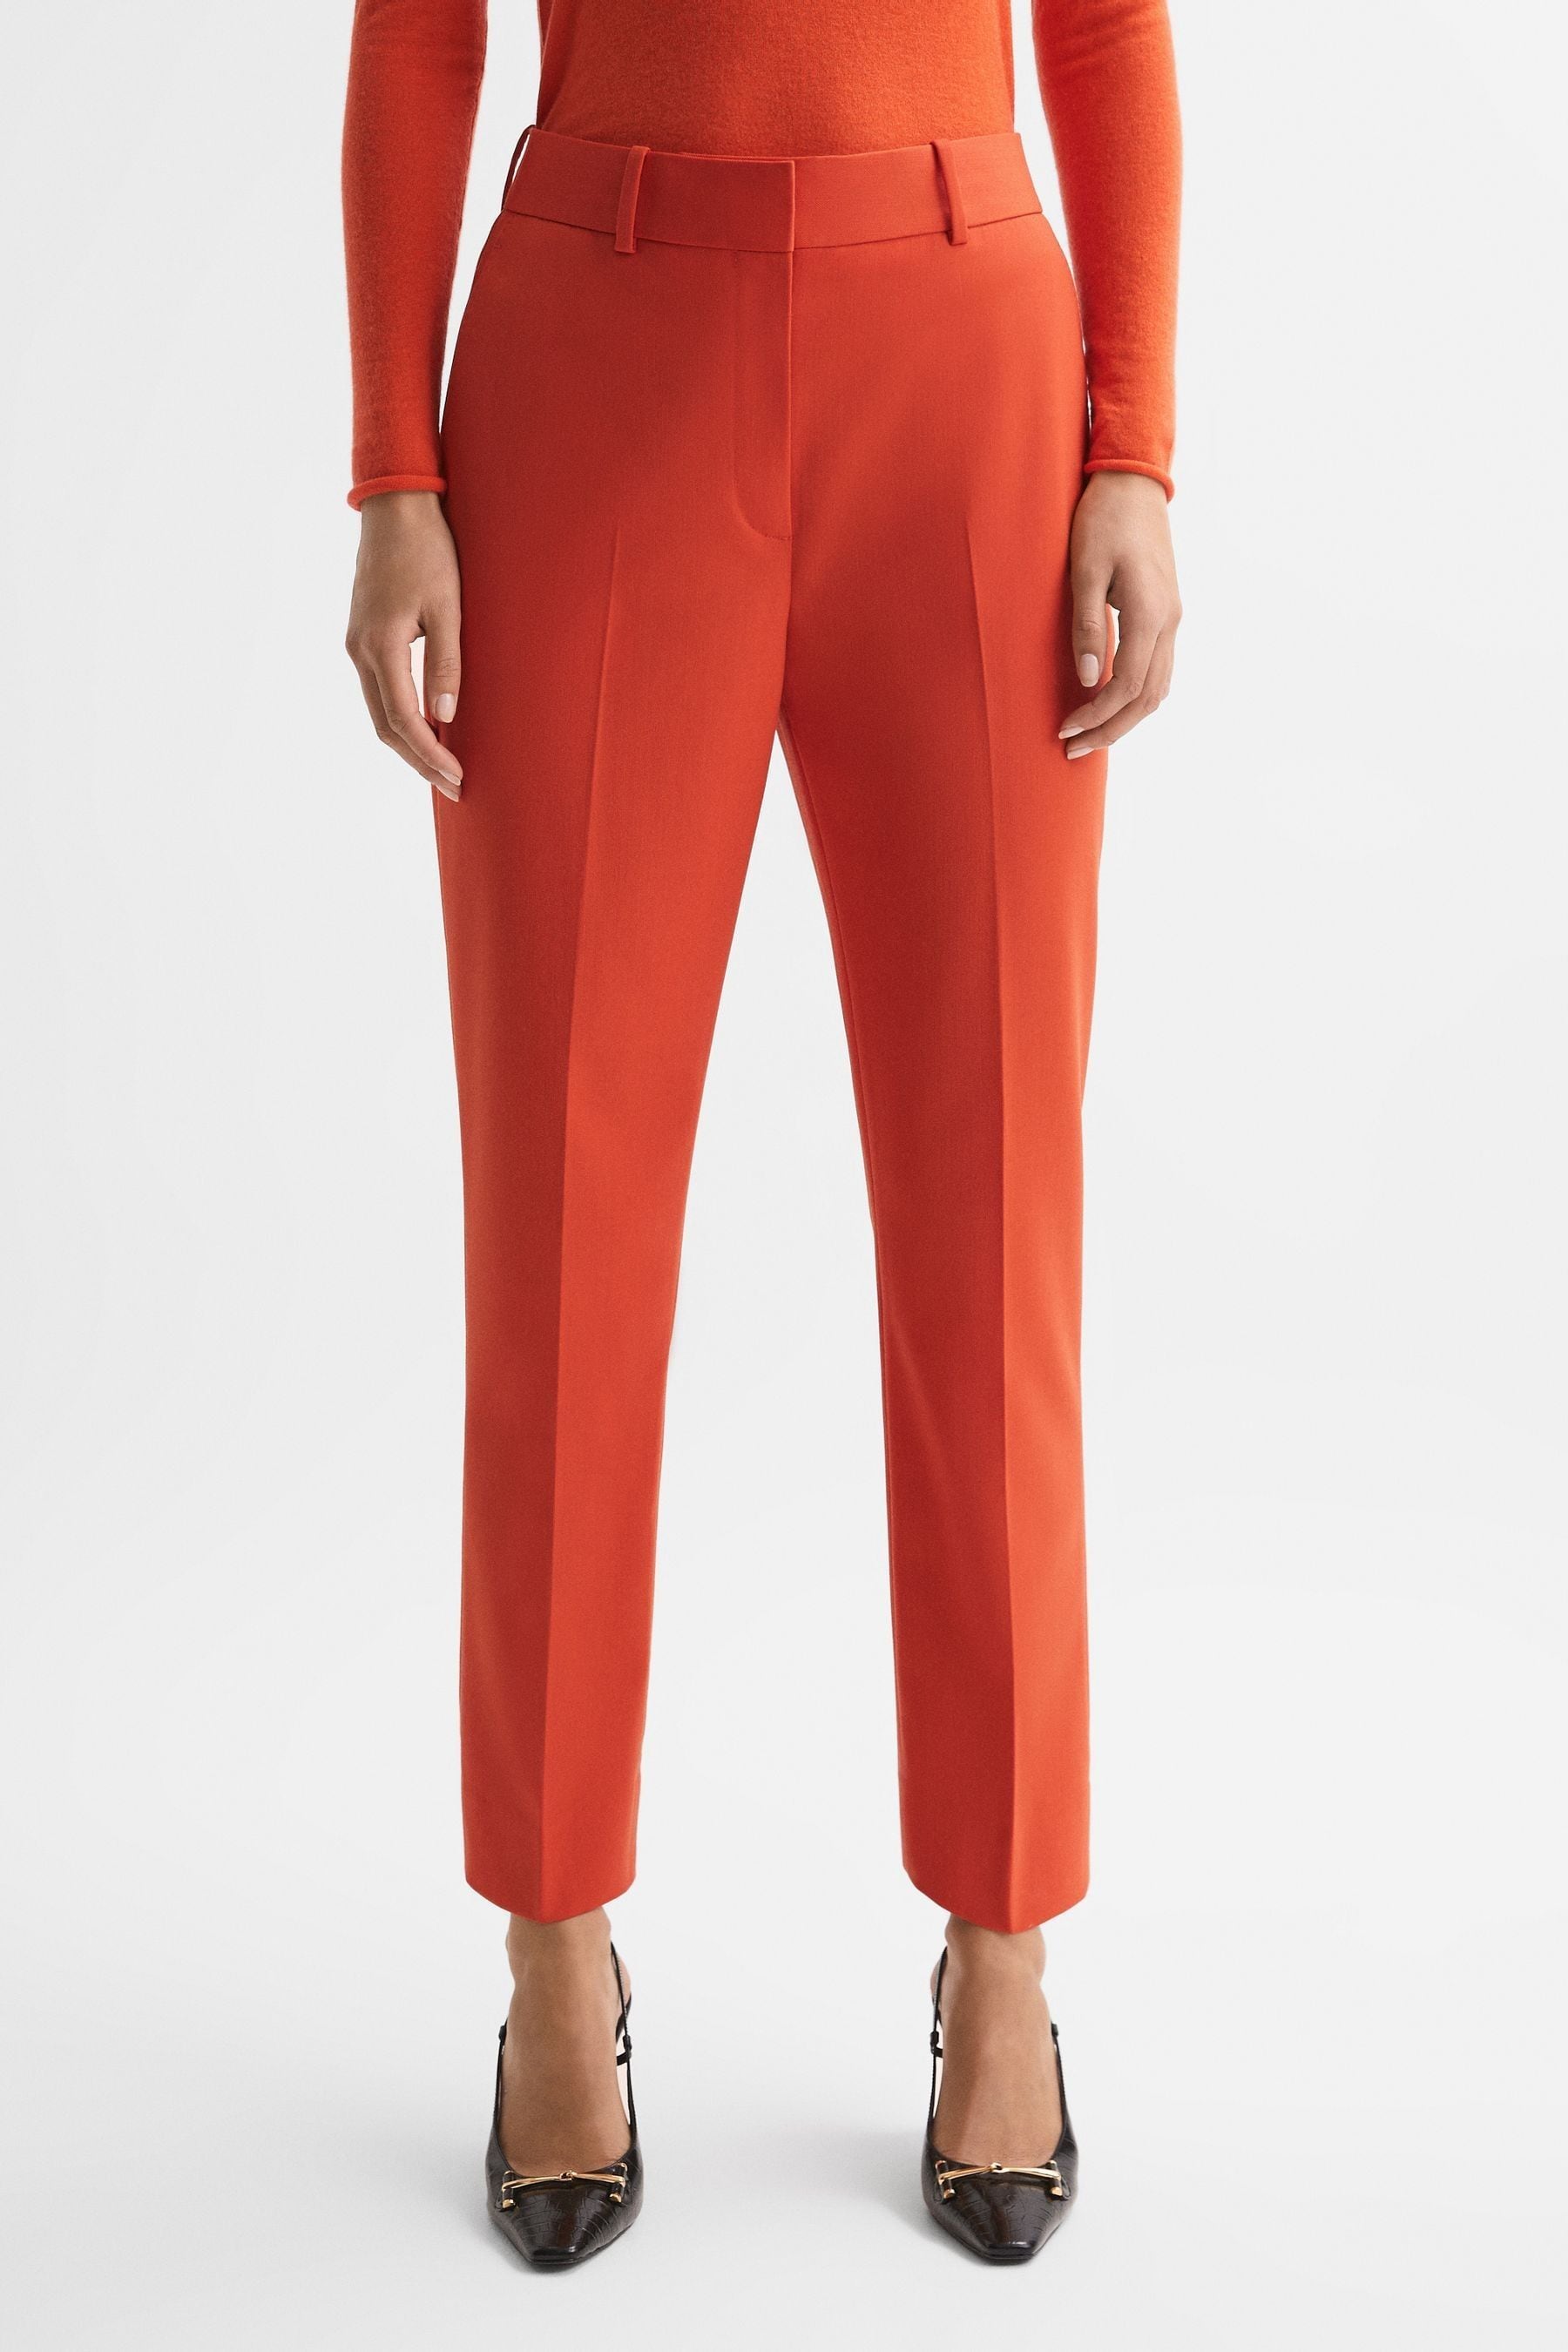 Reiss Celia - Orange Slim Fit Wool Blend Suit Trousers, Us 10